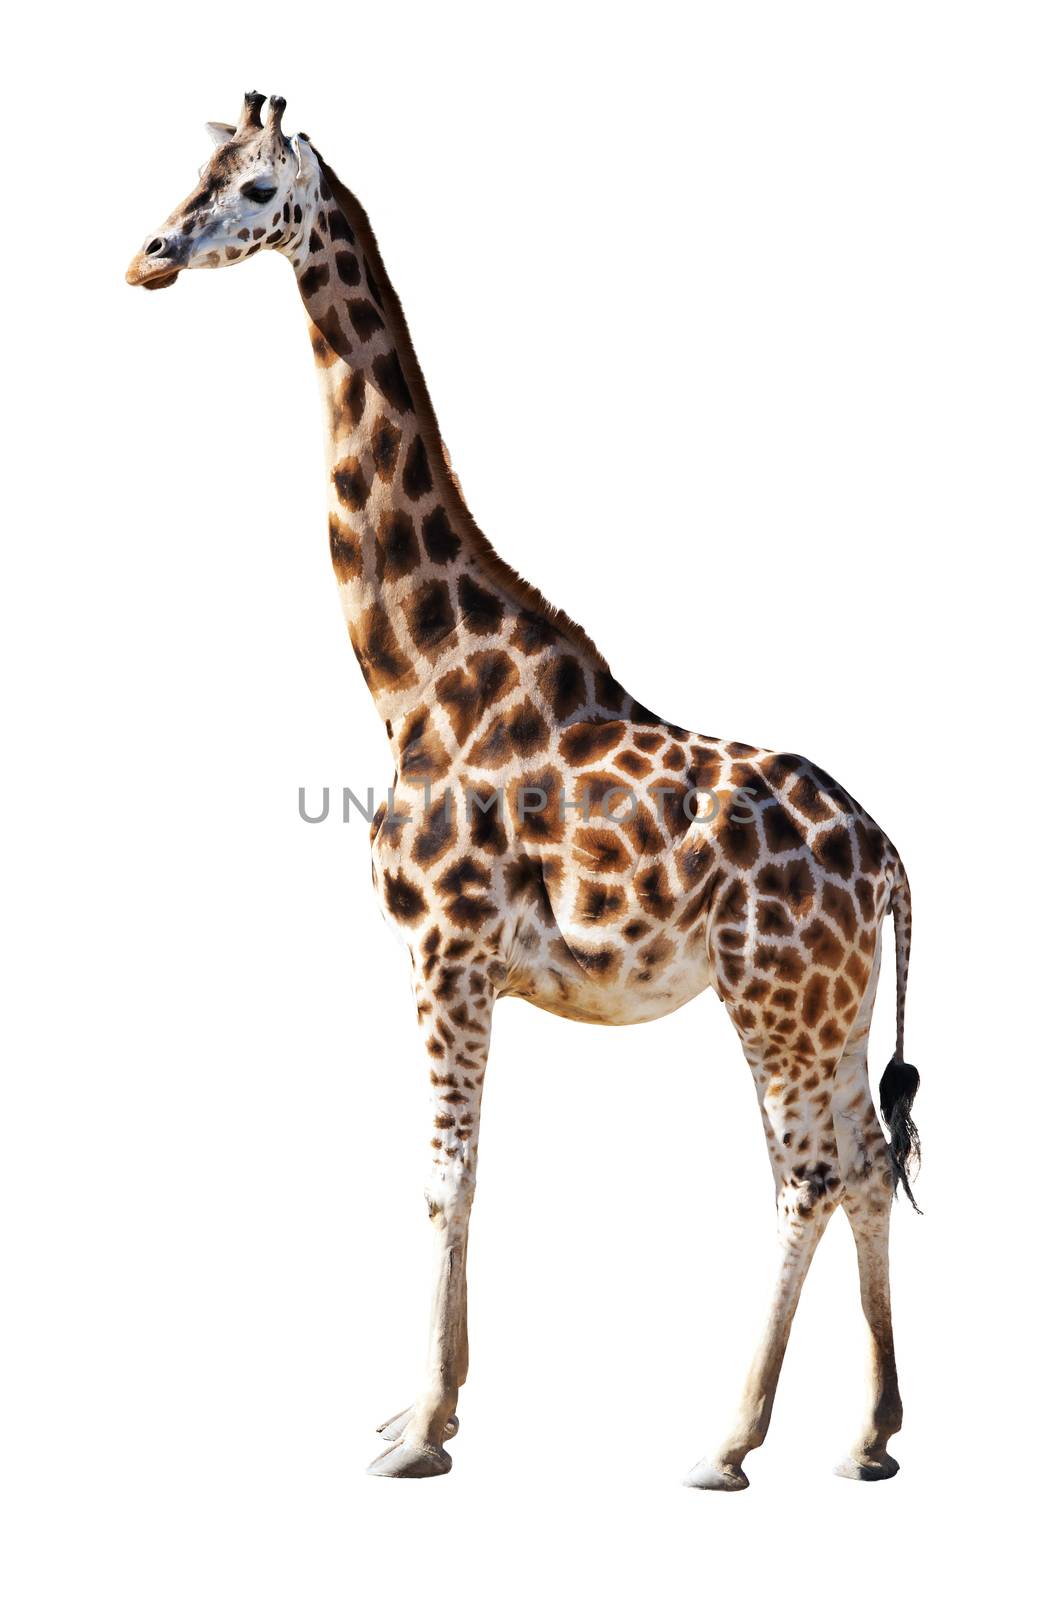 Giraffe by fyletto